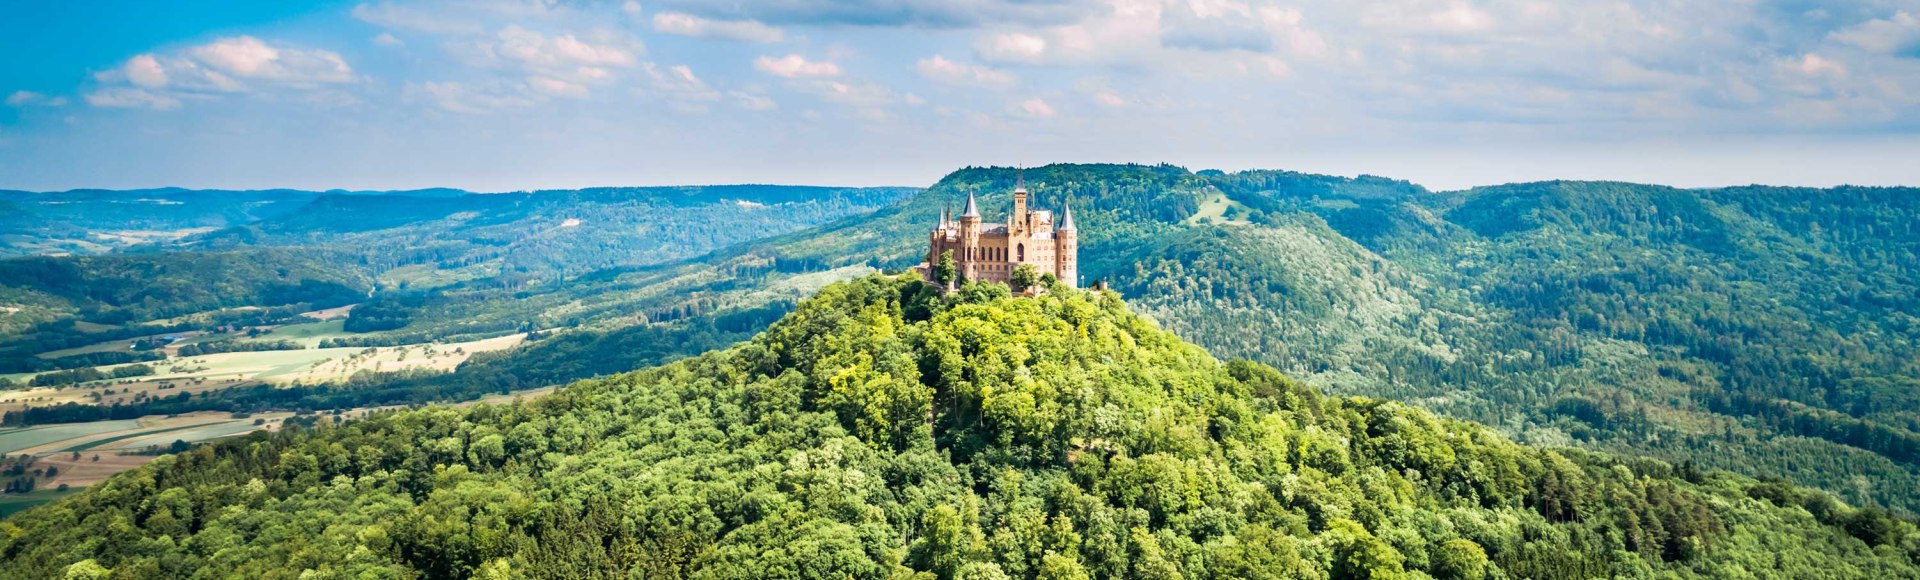 Blick auf die Burg Hohenzollern und die Schwäbische Alb im Hintergrund, Deutschland, © iStockphoto.com - cookelma